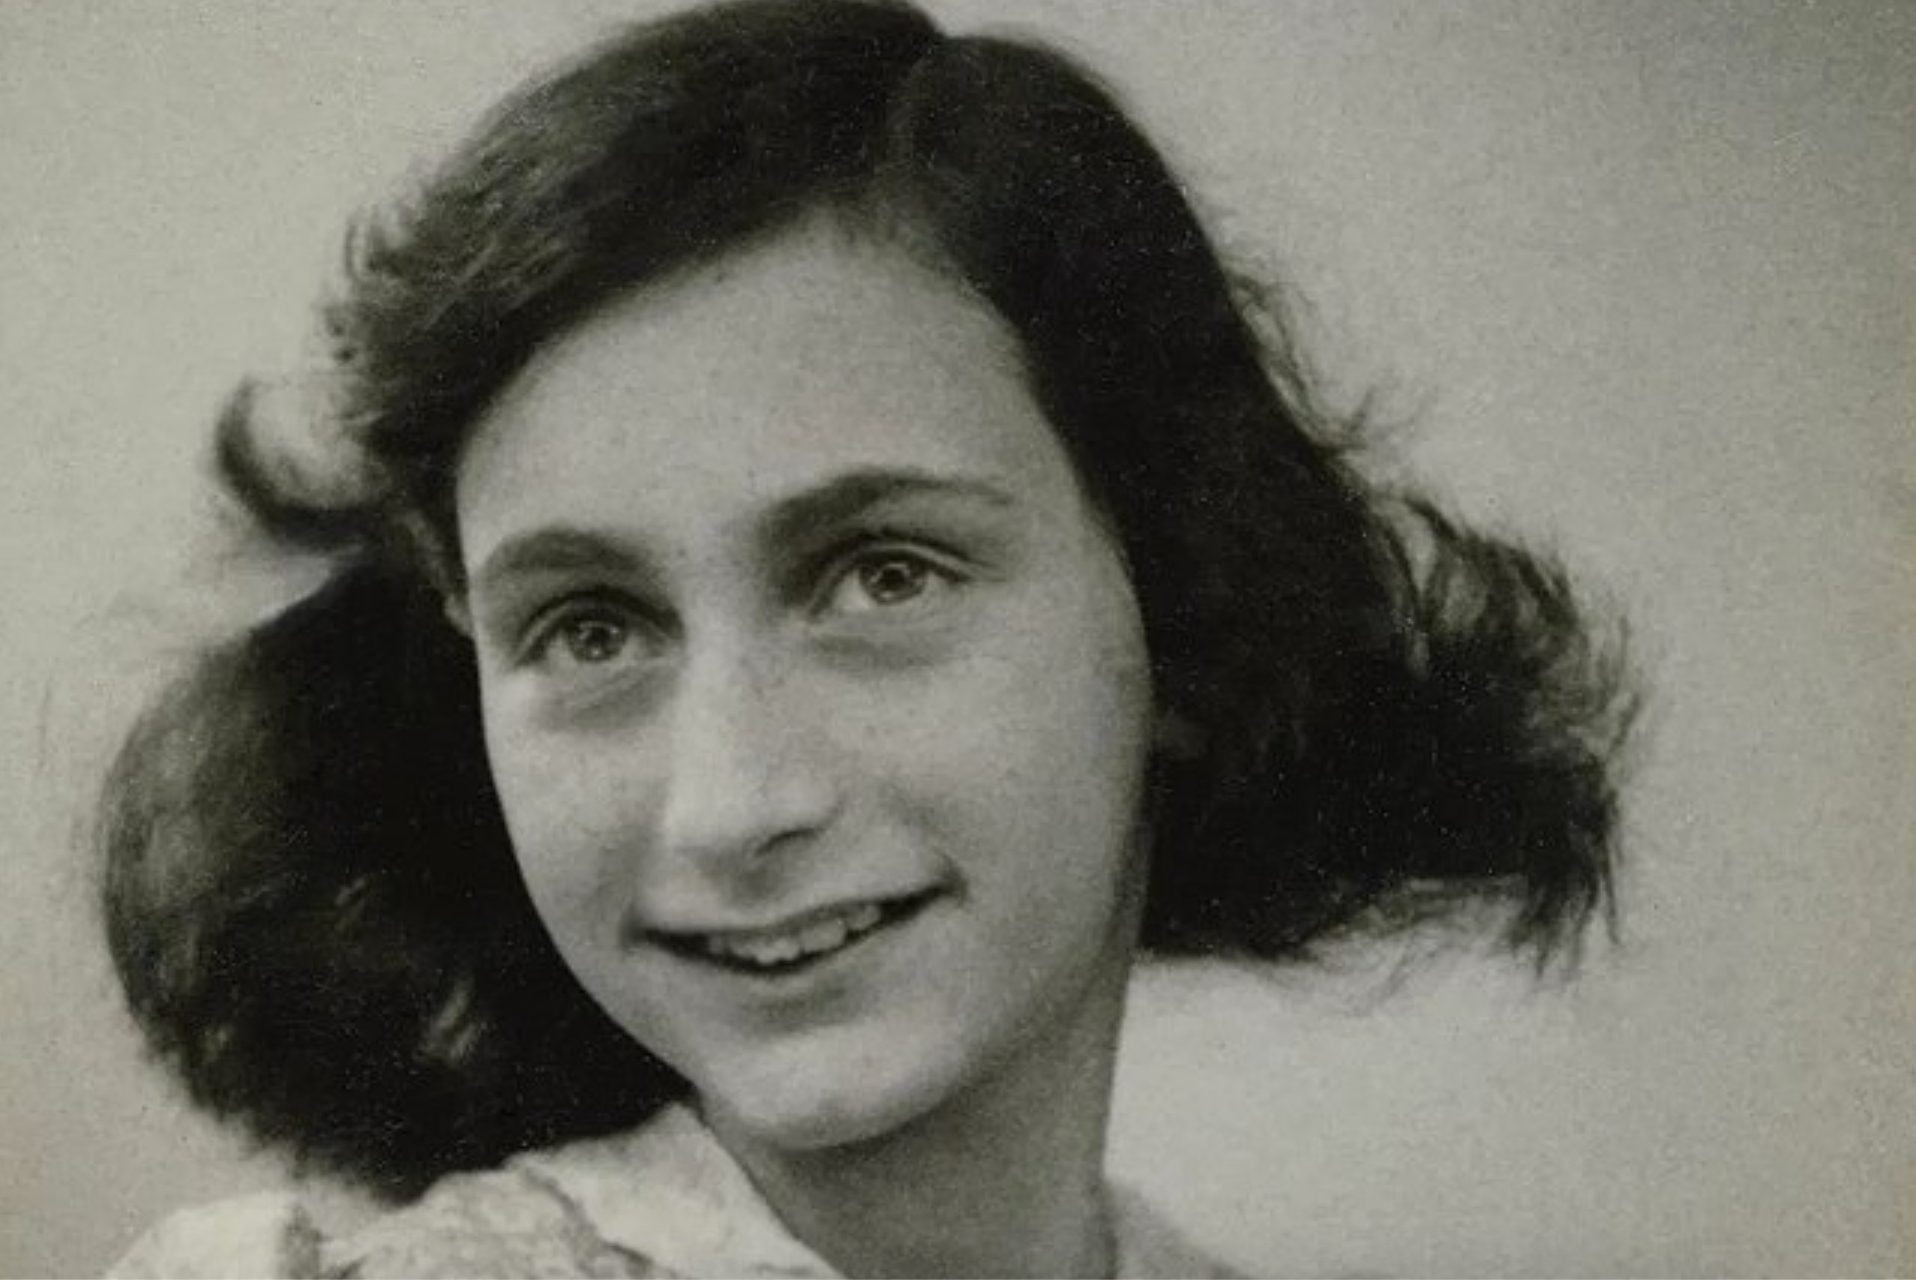 Anne Frank ve Ailesine Kimin Ihanet Ettigi Gizemi Cozulmus Olabilir